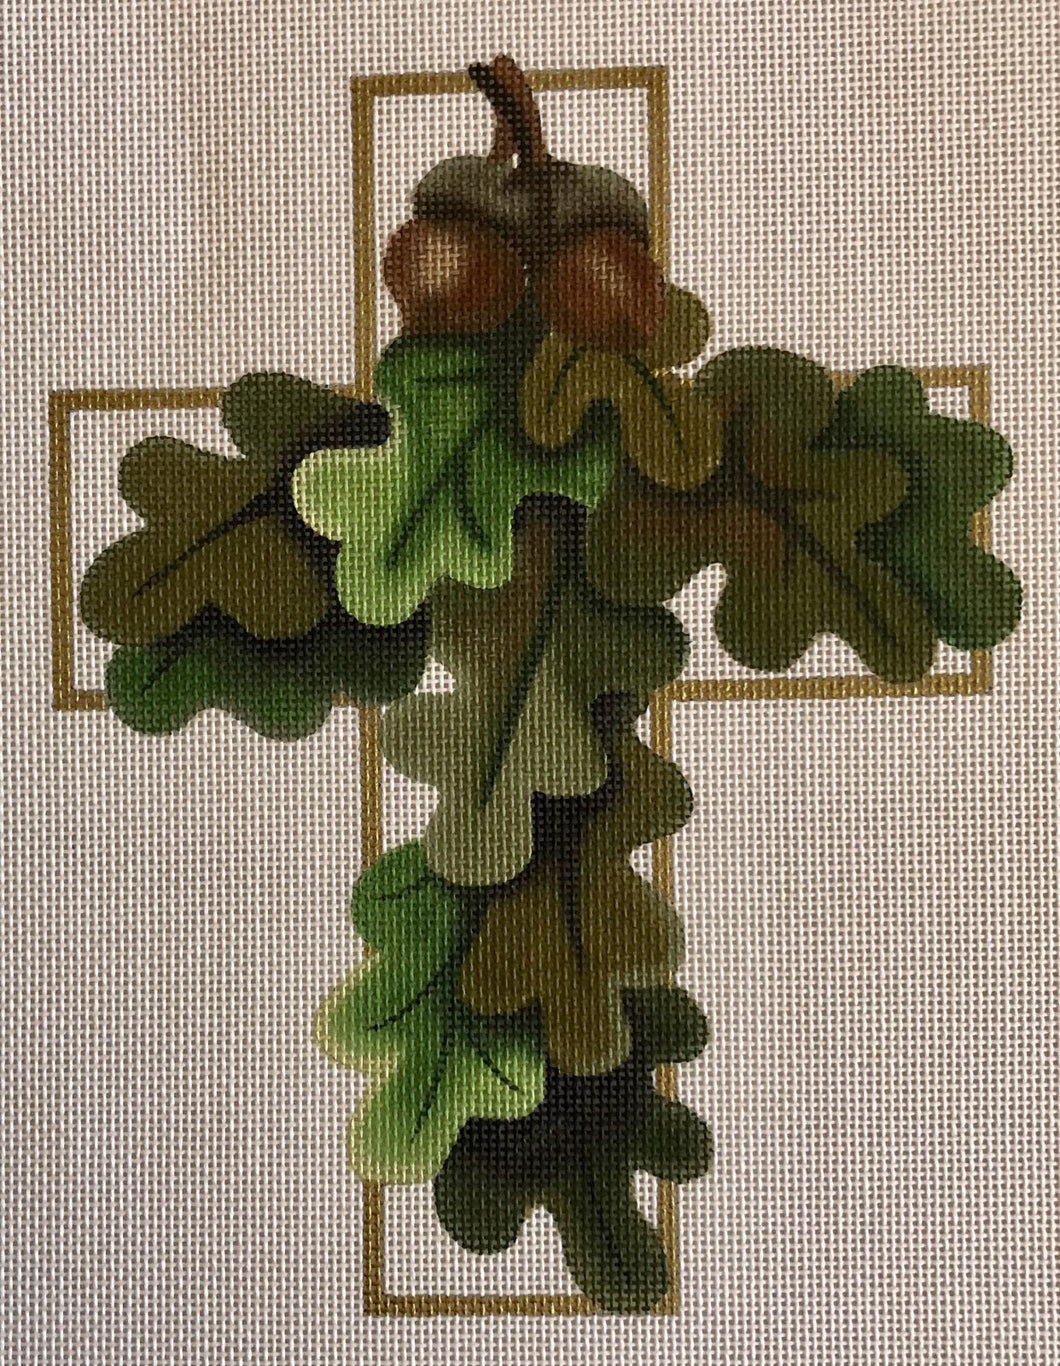 oak leaf cross